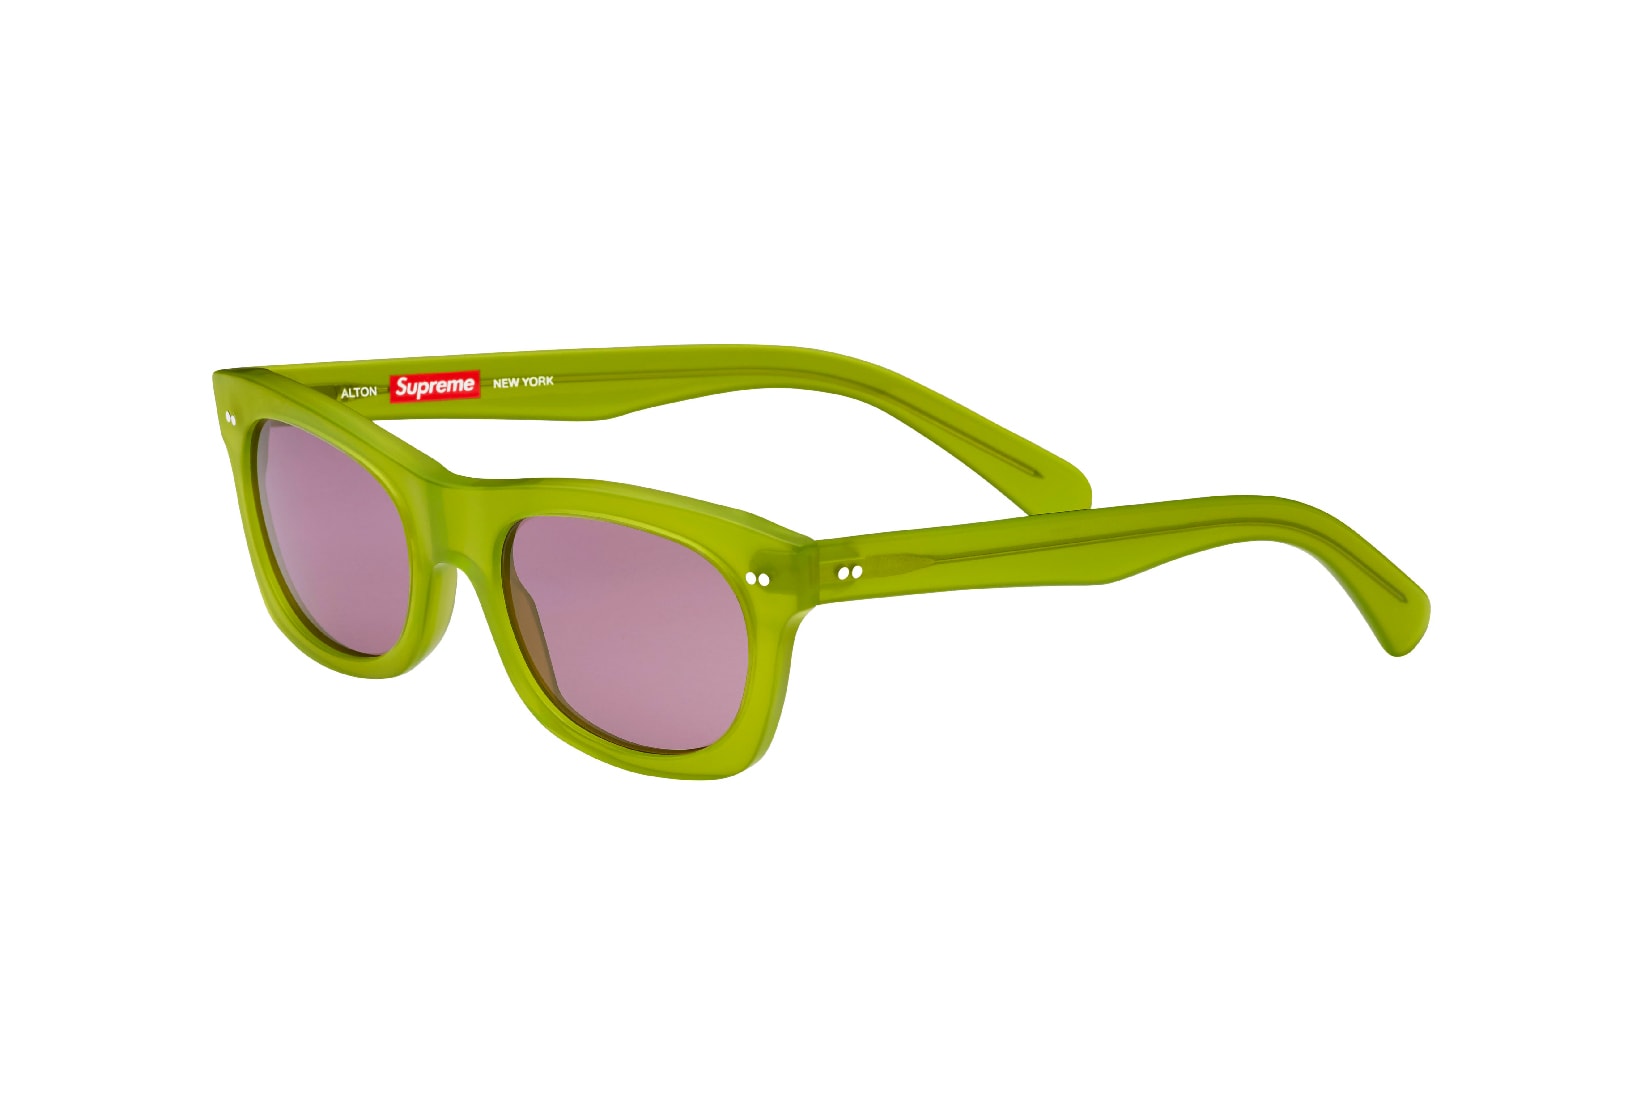 Supreme 2017 Spring Alton Sunglasses Green